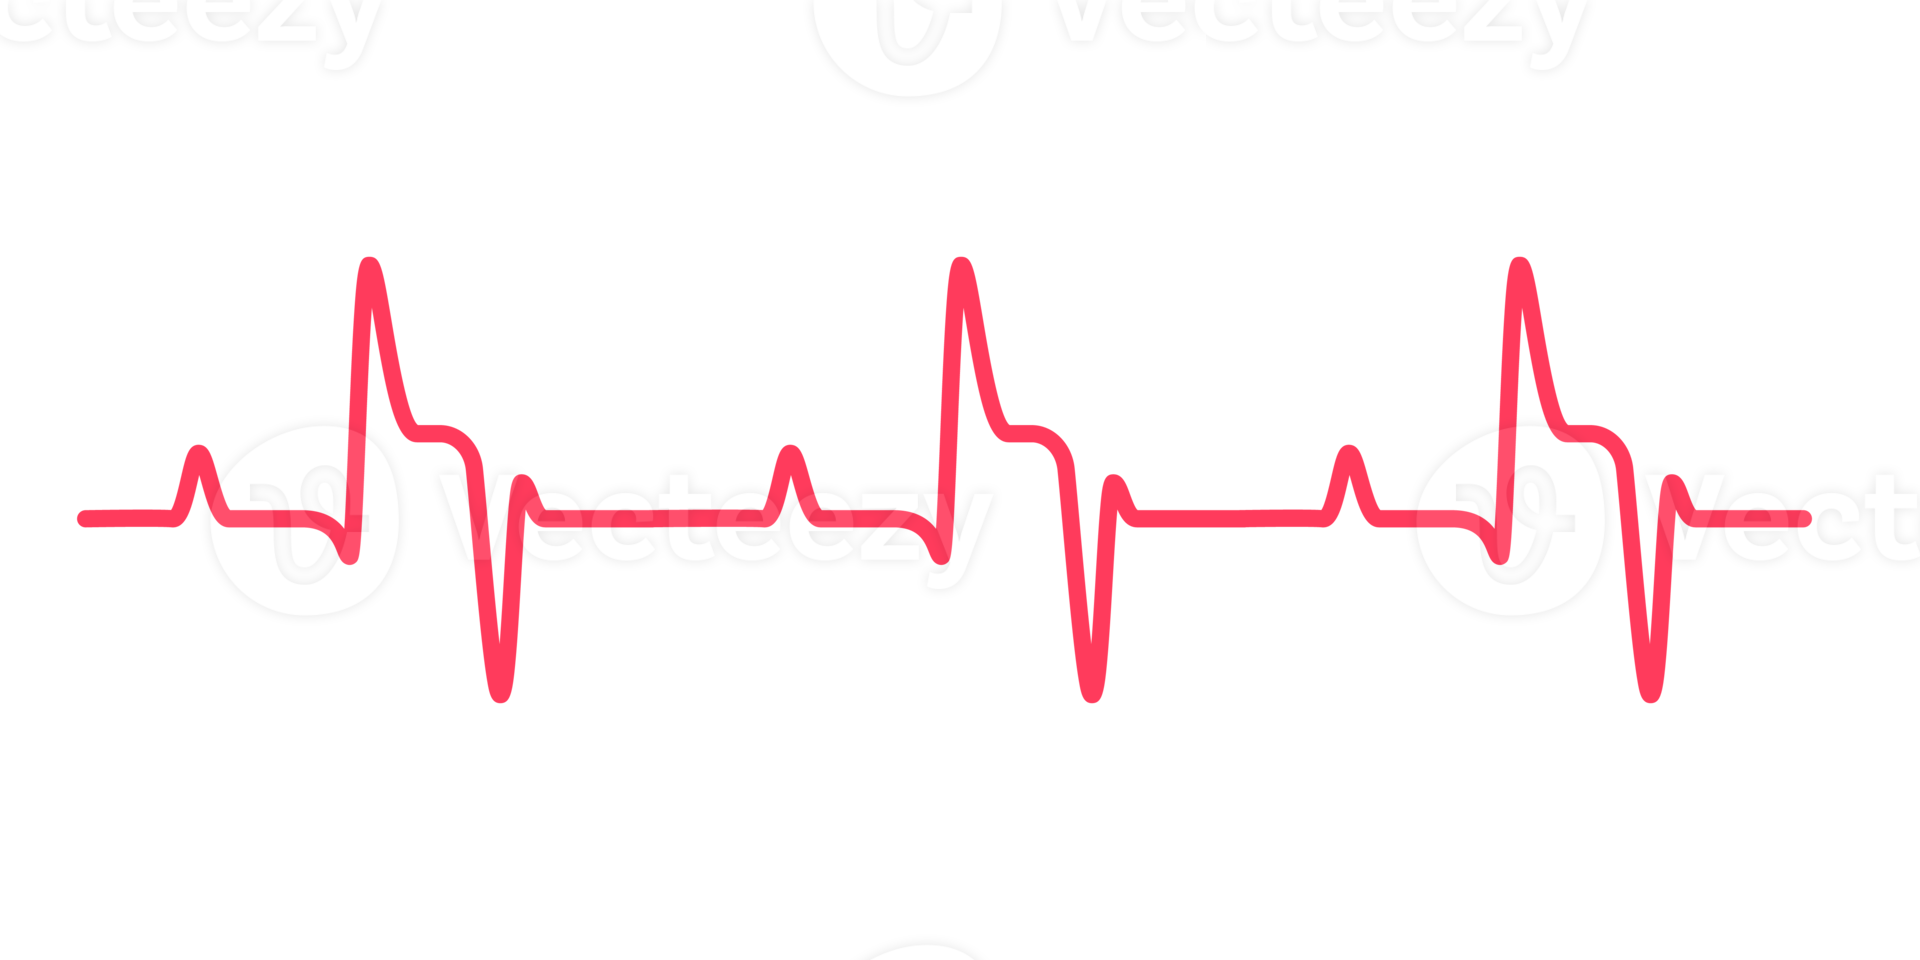 cuore ritmo grafico controllo il tuo battito cardiaco per diagnosi png